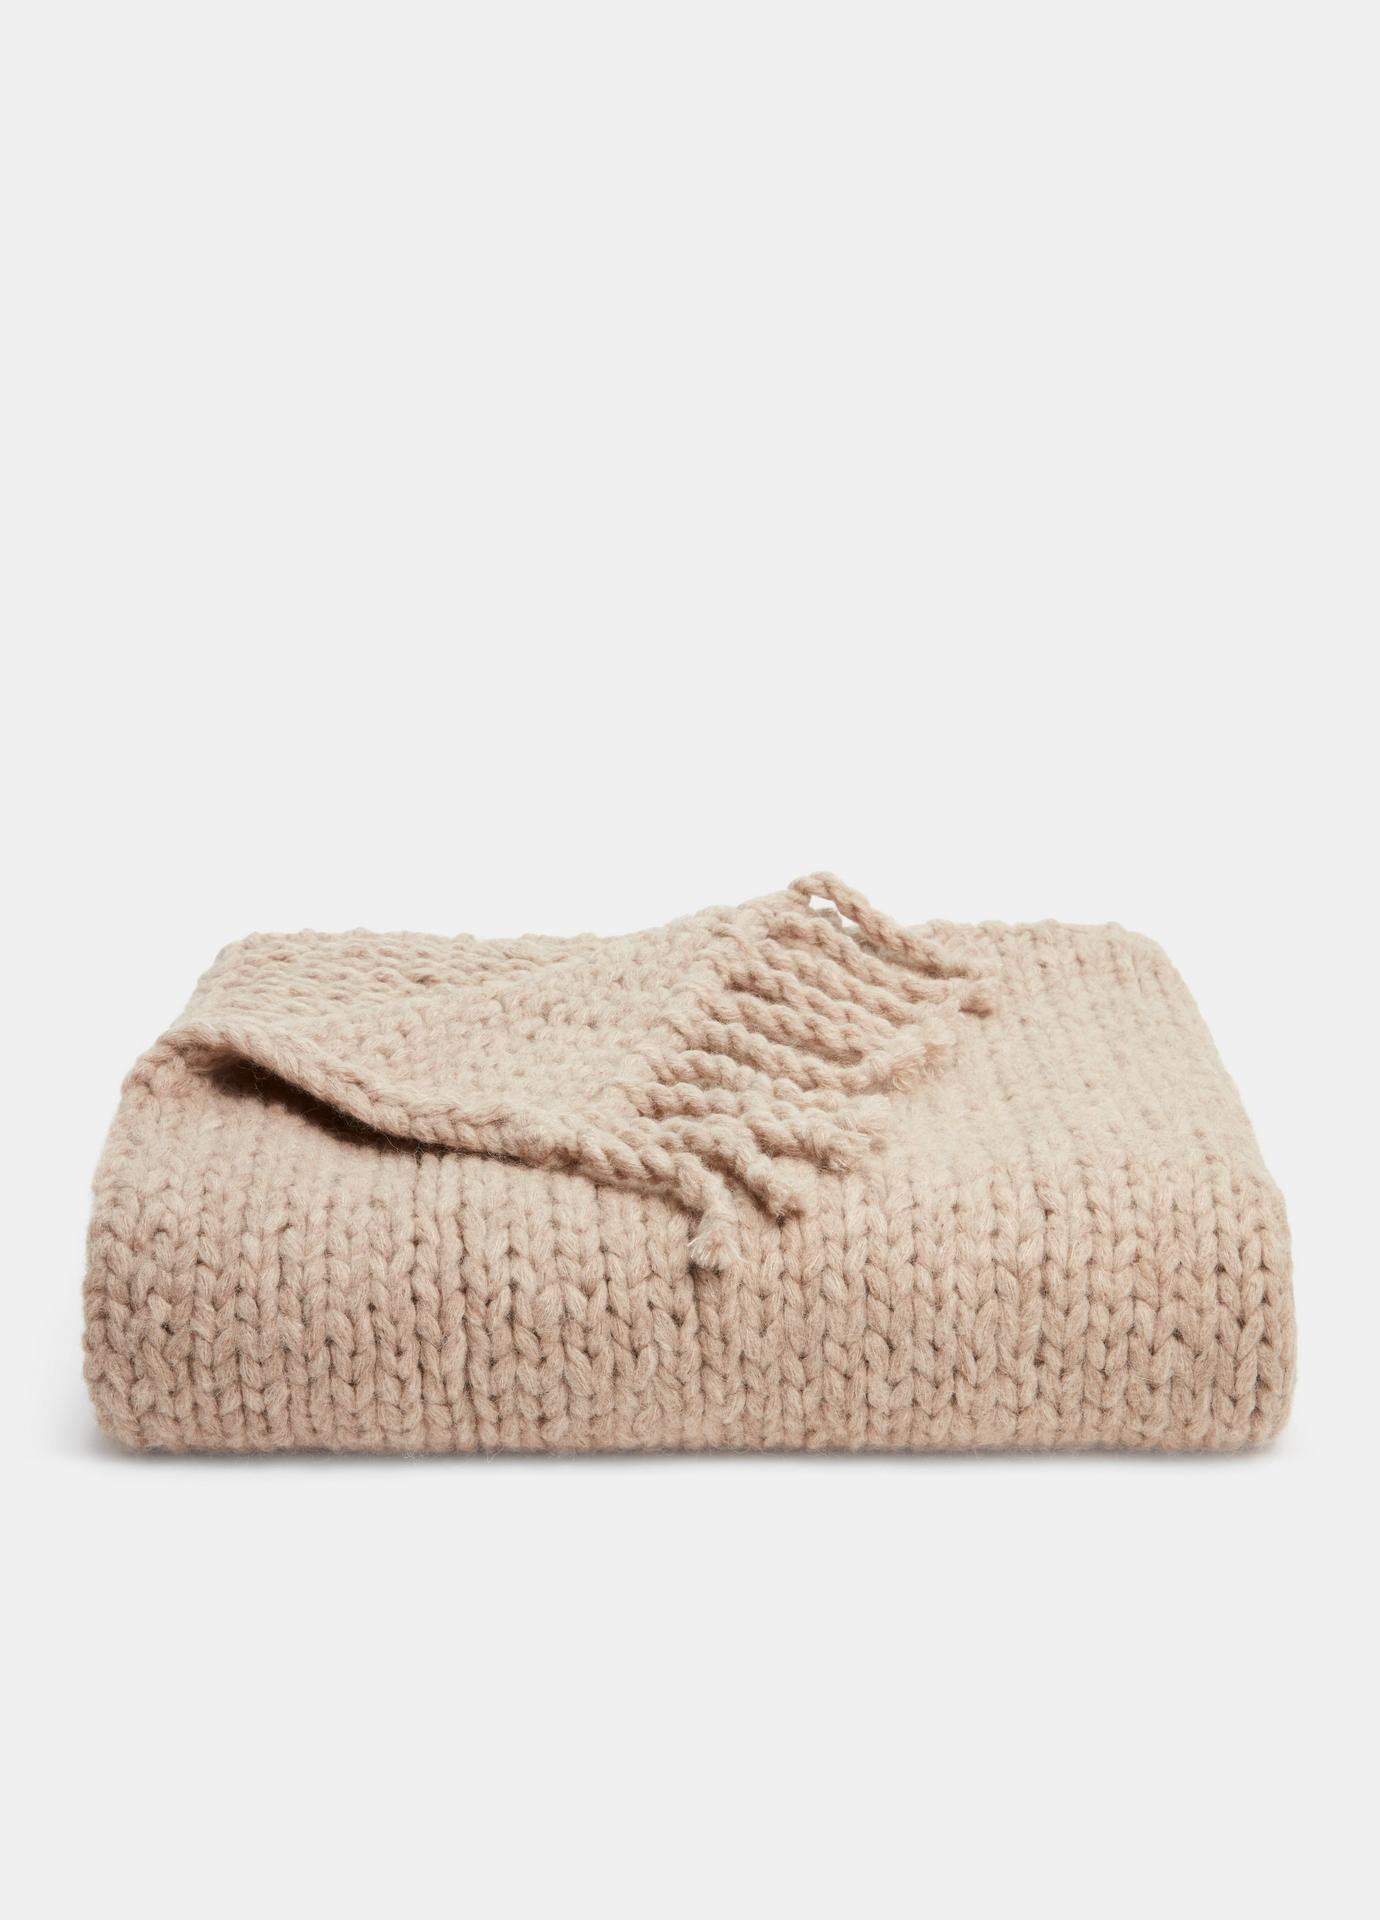 Vince Hand Knit Blanket